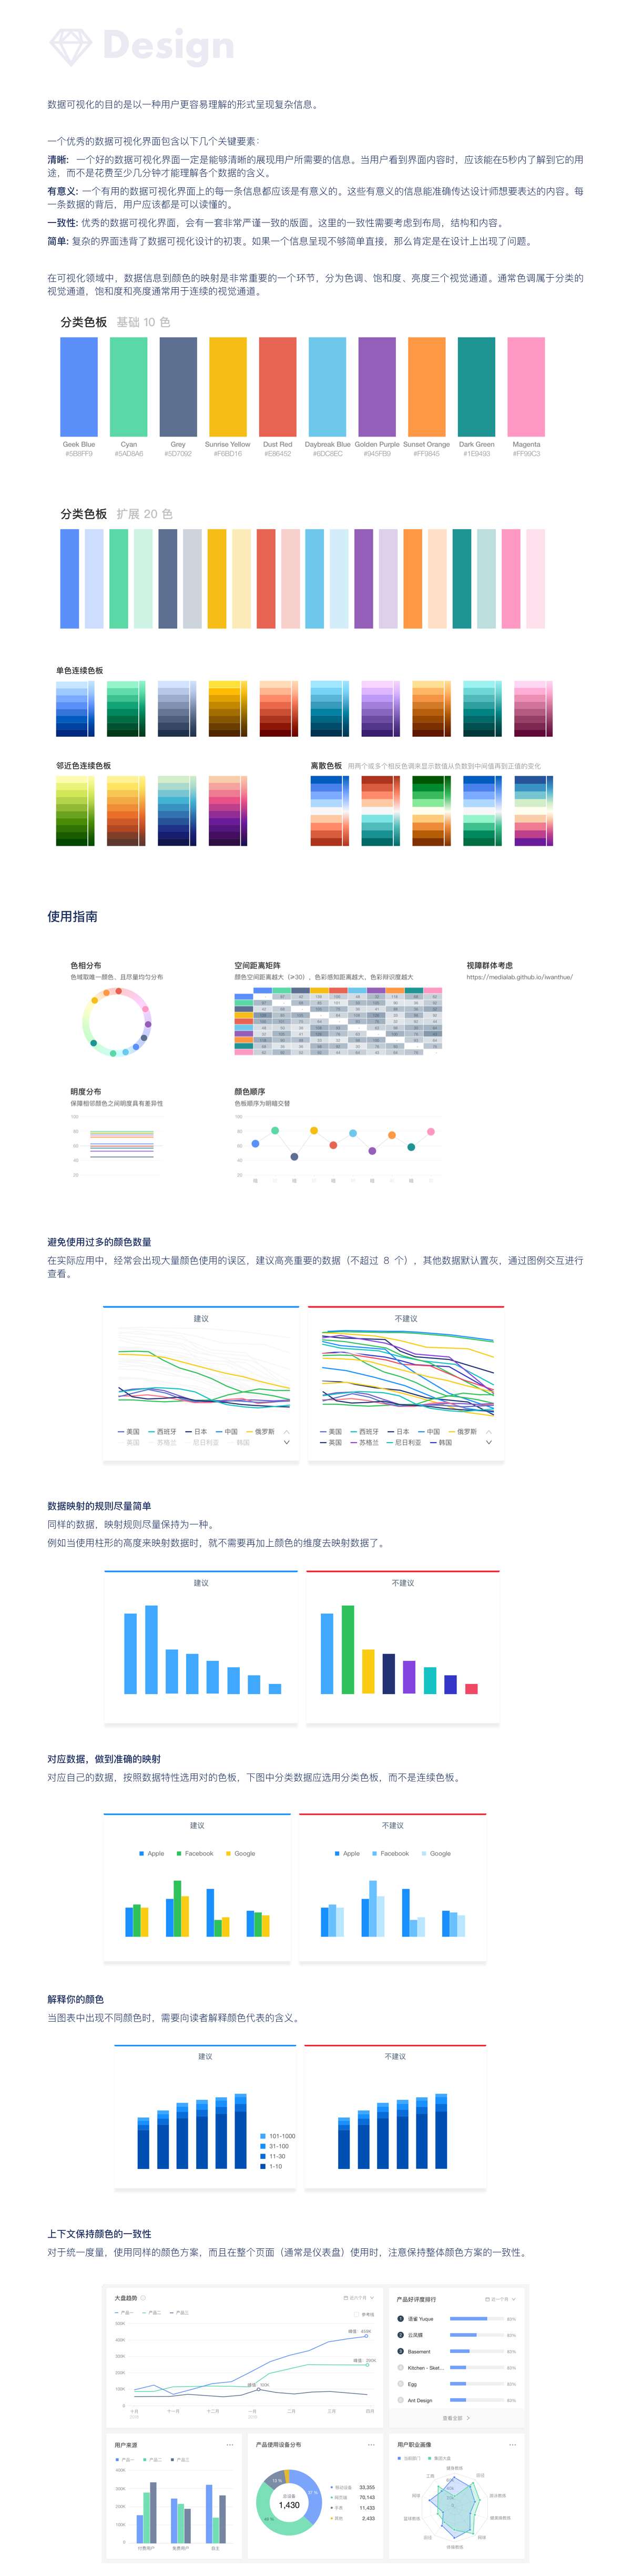 B端产品设计体验-数据图表篇